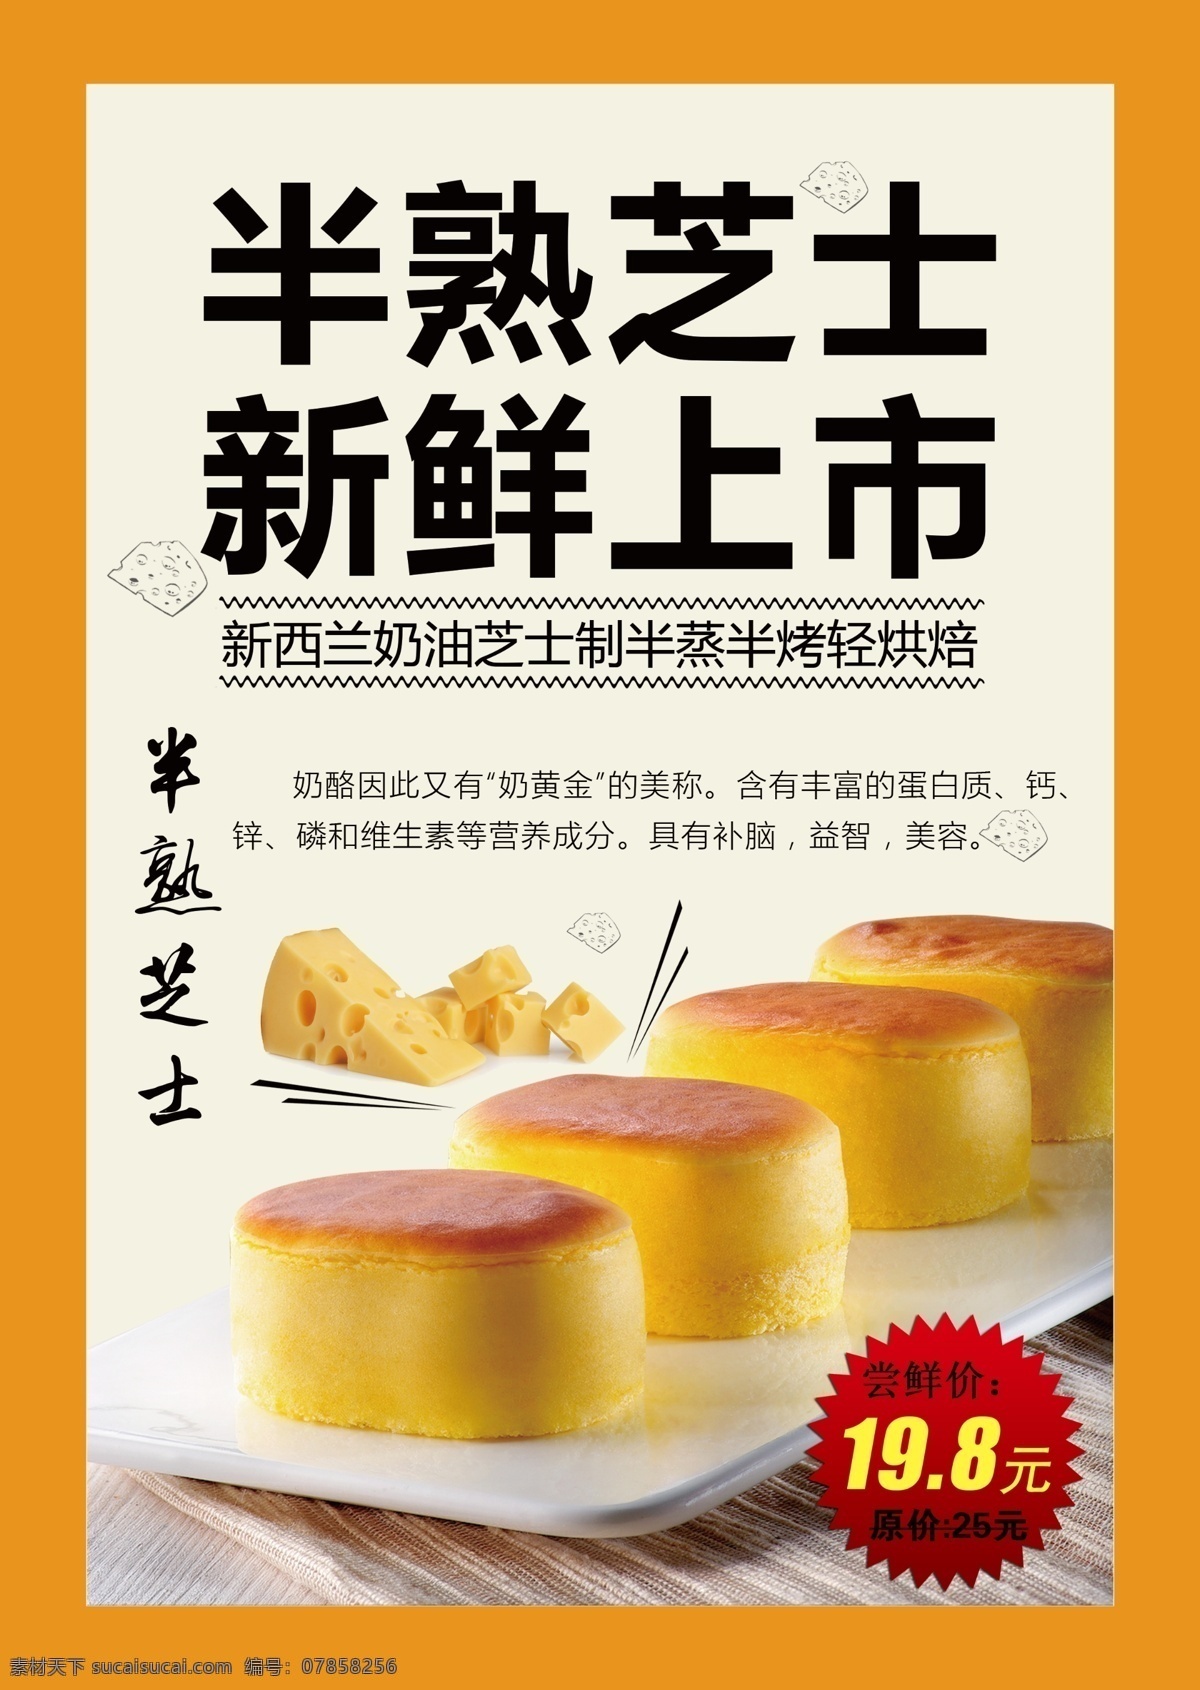 轻乳酸 芝士蛋糕海报 芝士蛋糕 宣传画 轻乳酪 西点 美食 芝士 蛋糕店 面包店海报